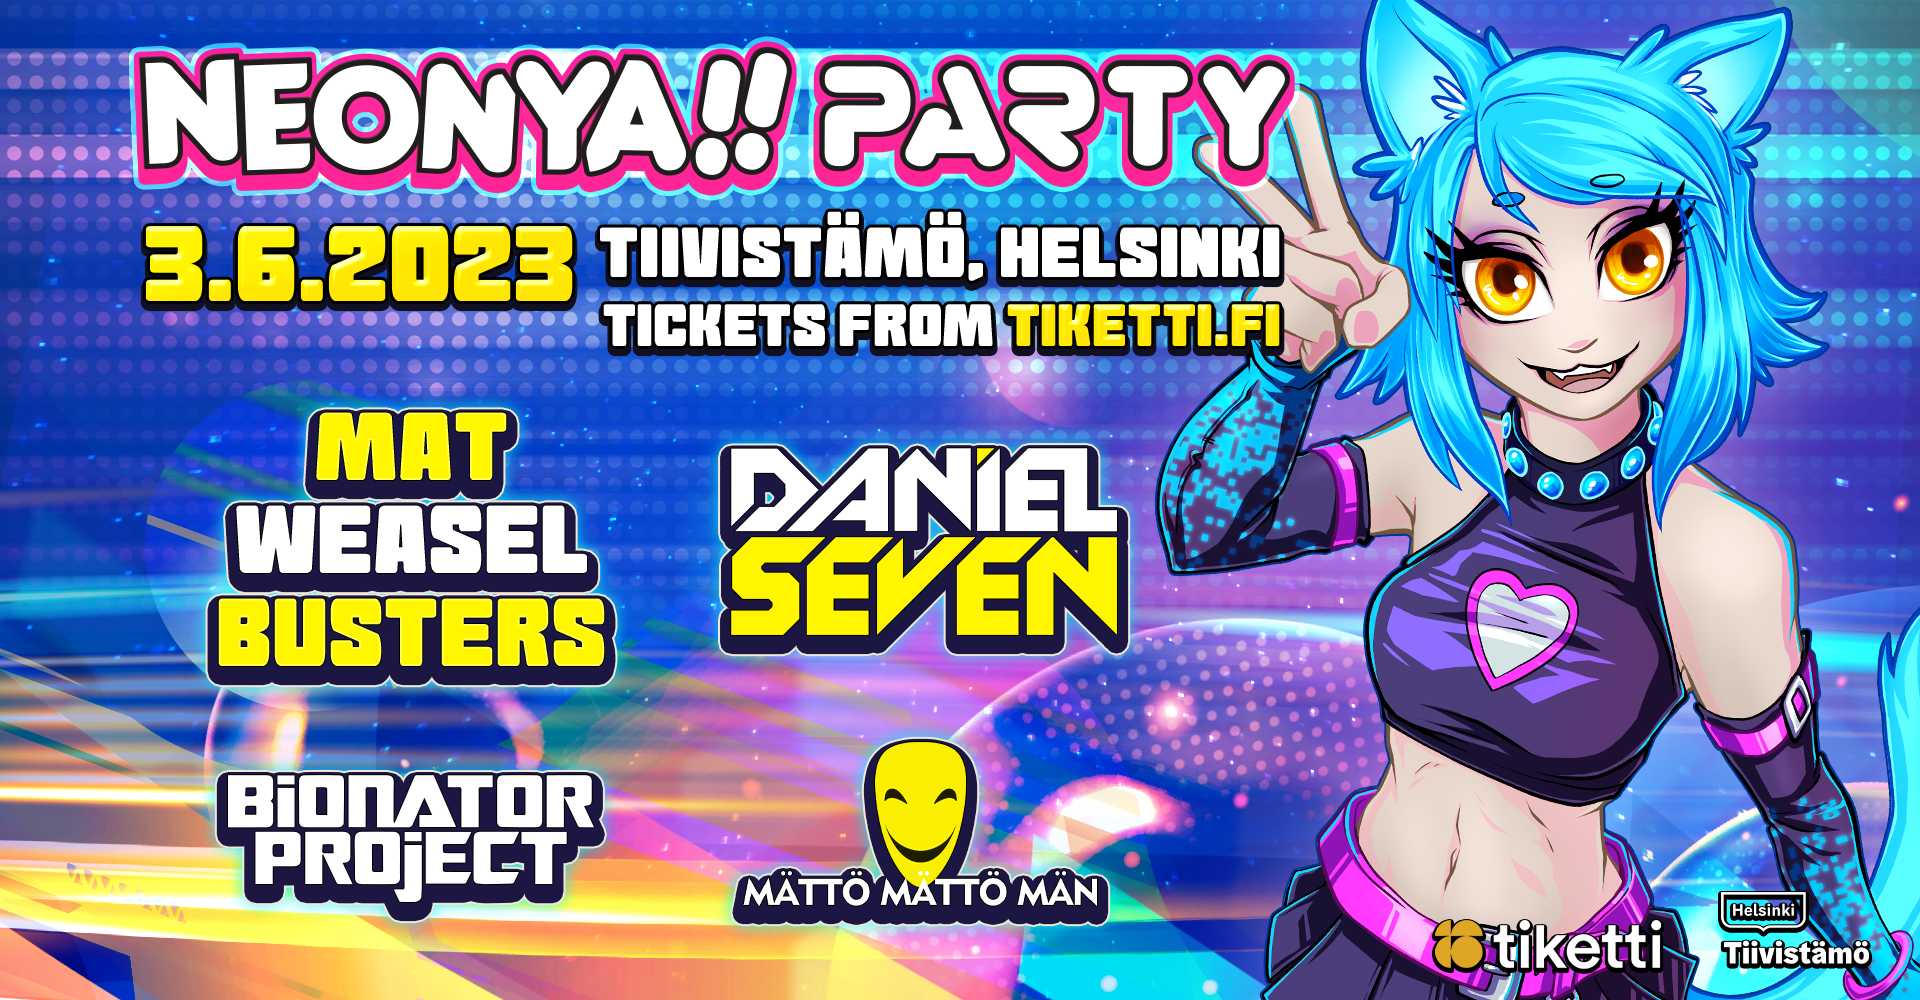 Neonya!! Party: Hardcore Heat 3.6.2023 at Tiivistämö, Helsinki